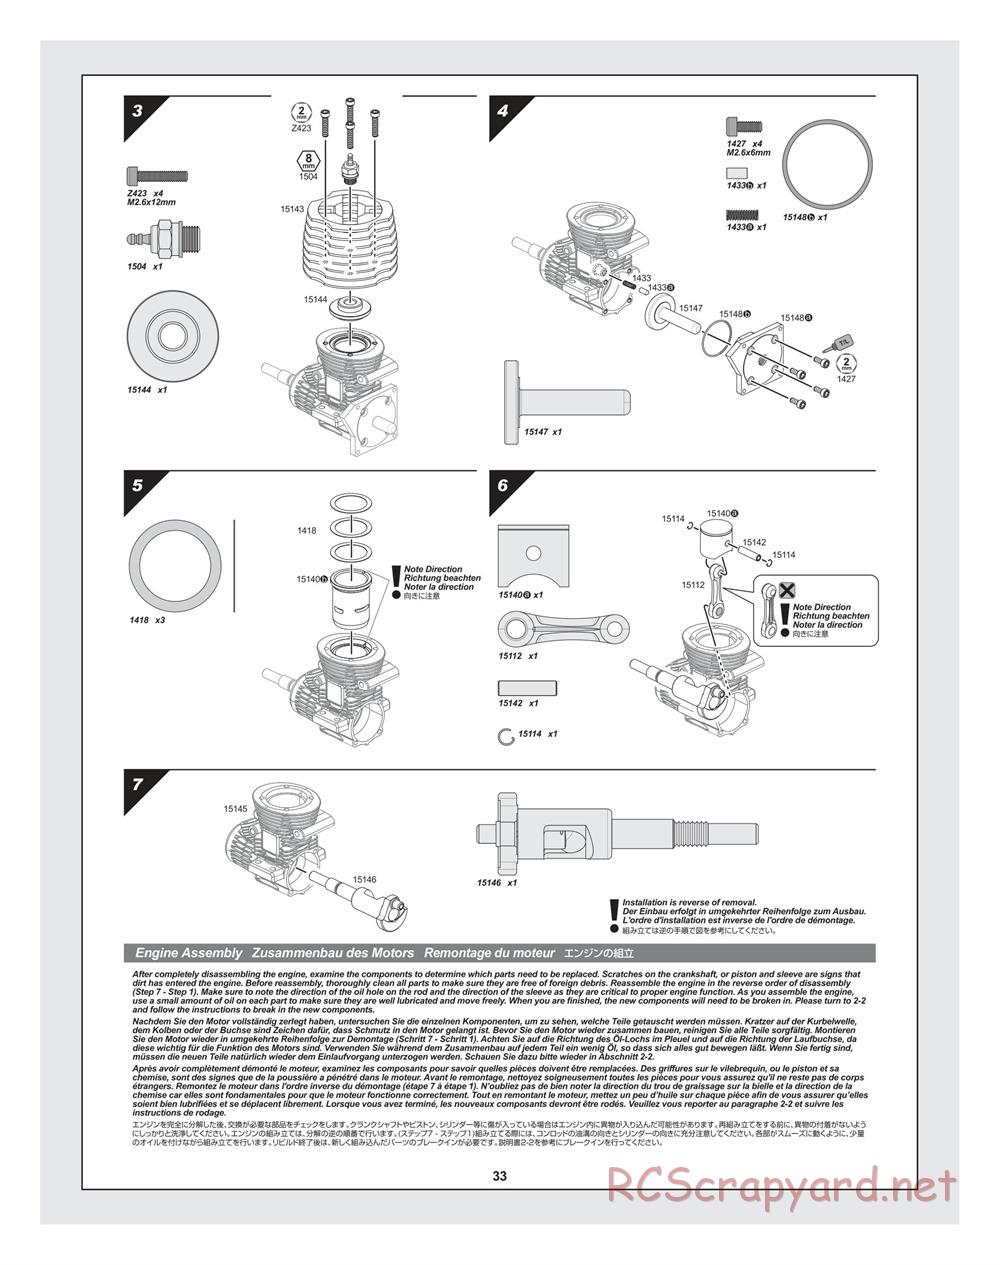 HPI - Bullet ST 3.0 (2011) - Manual - Page 33